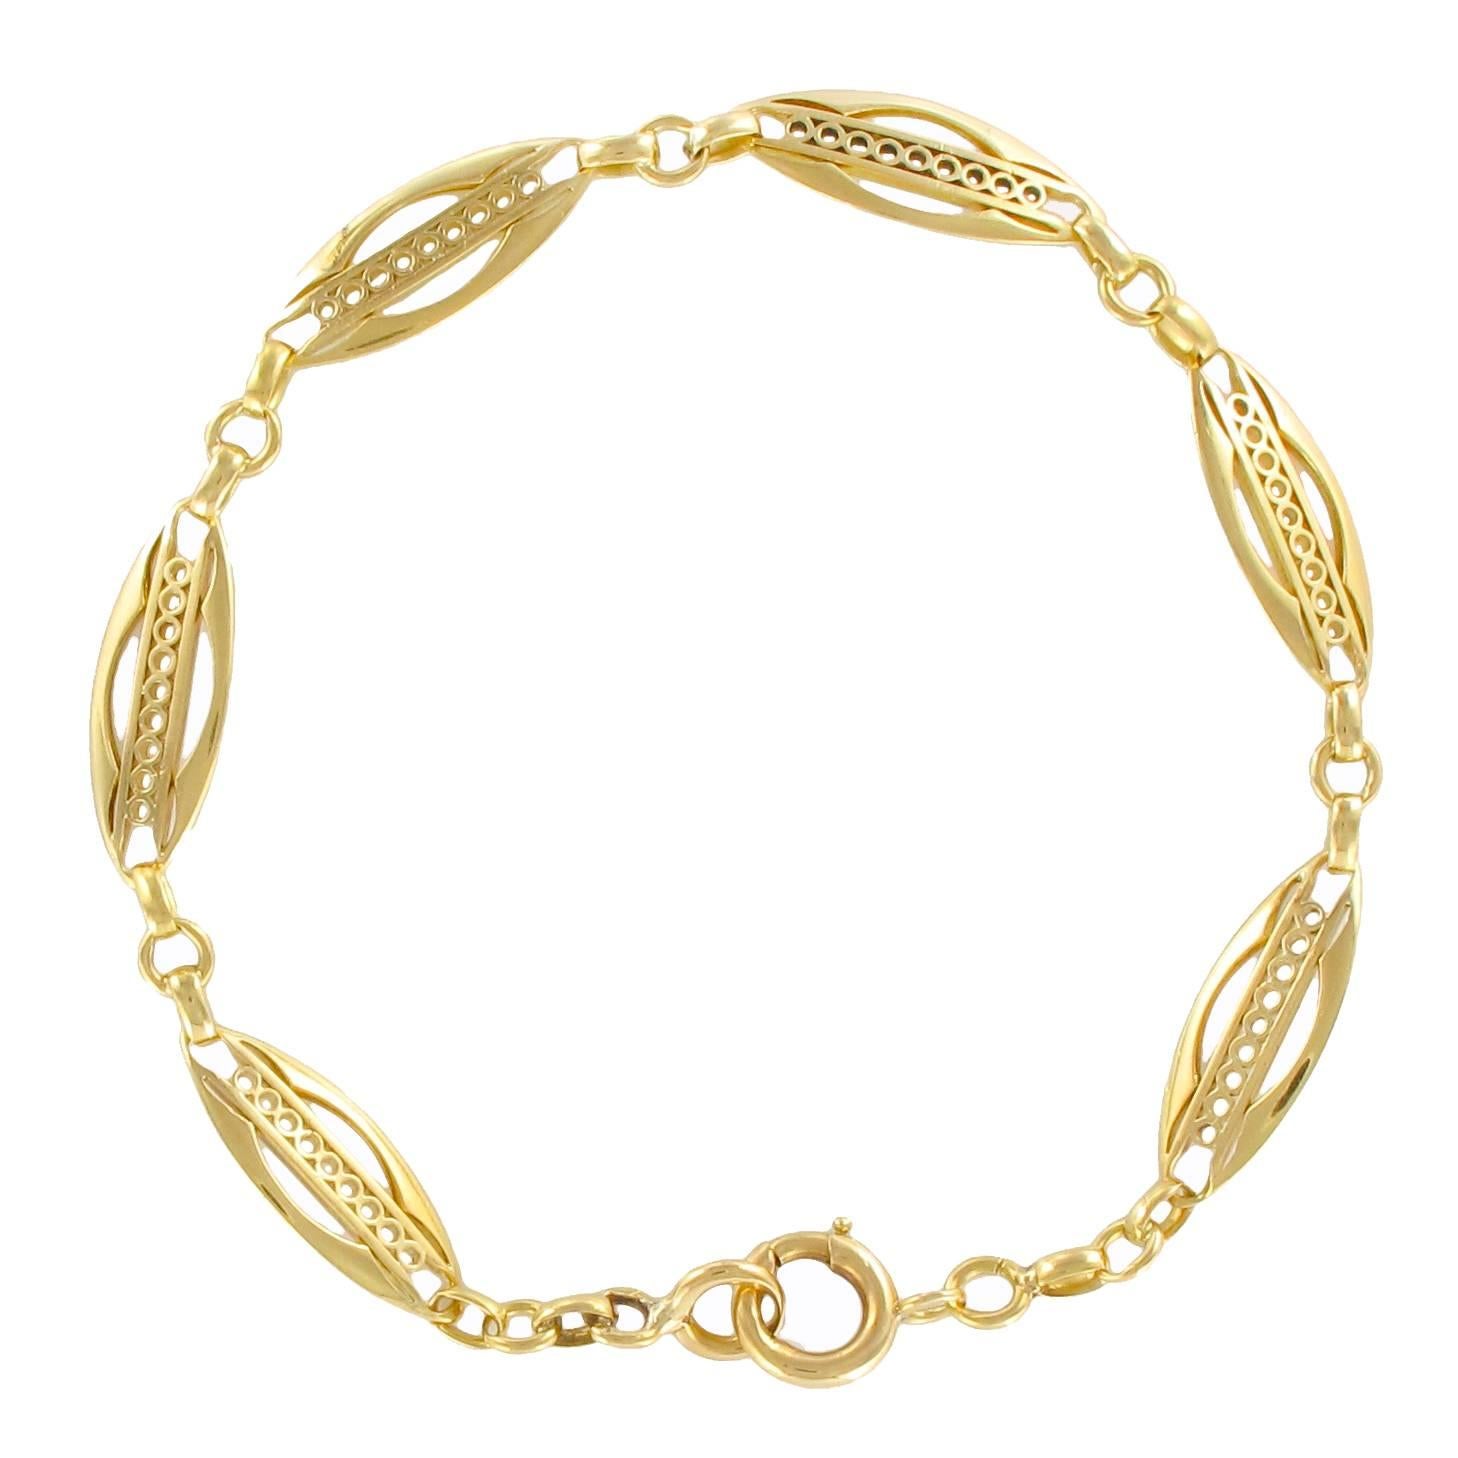 1900s French Belle Époque 18 Carat Yellow Gold Link Chain Bracelet